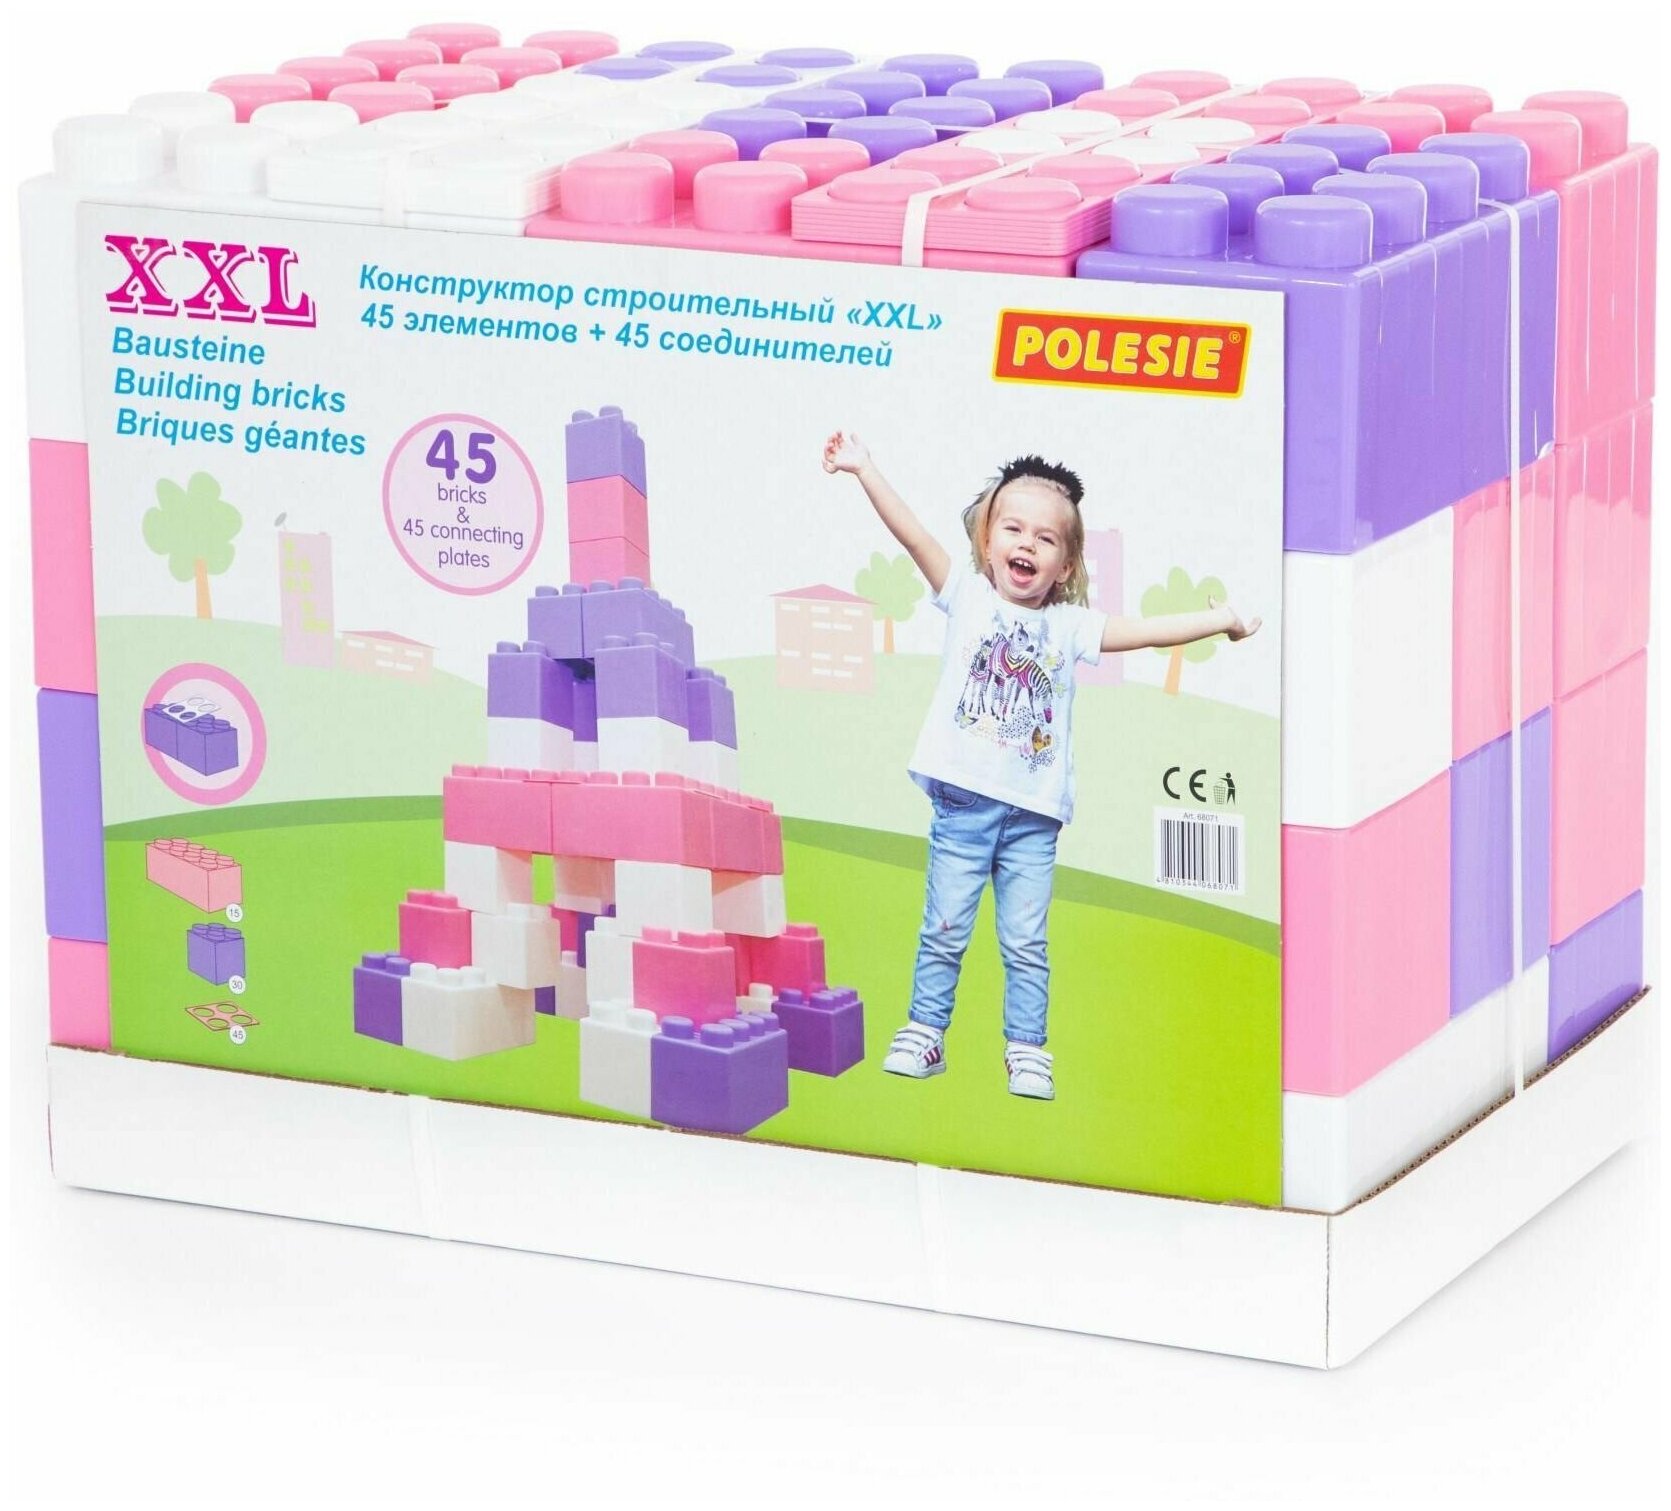 Детский блочный конструктор "XXL" для девочки с розовыми цветами - 45 эл. + соединители (45 шт.)